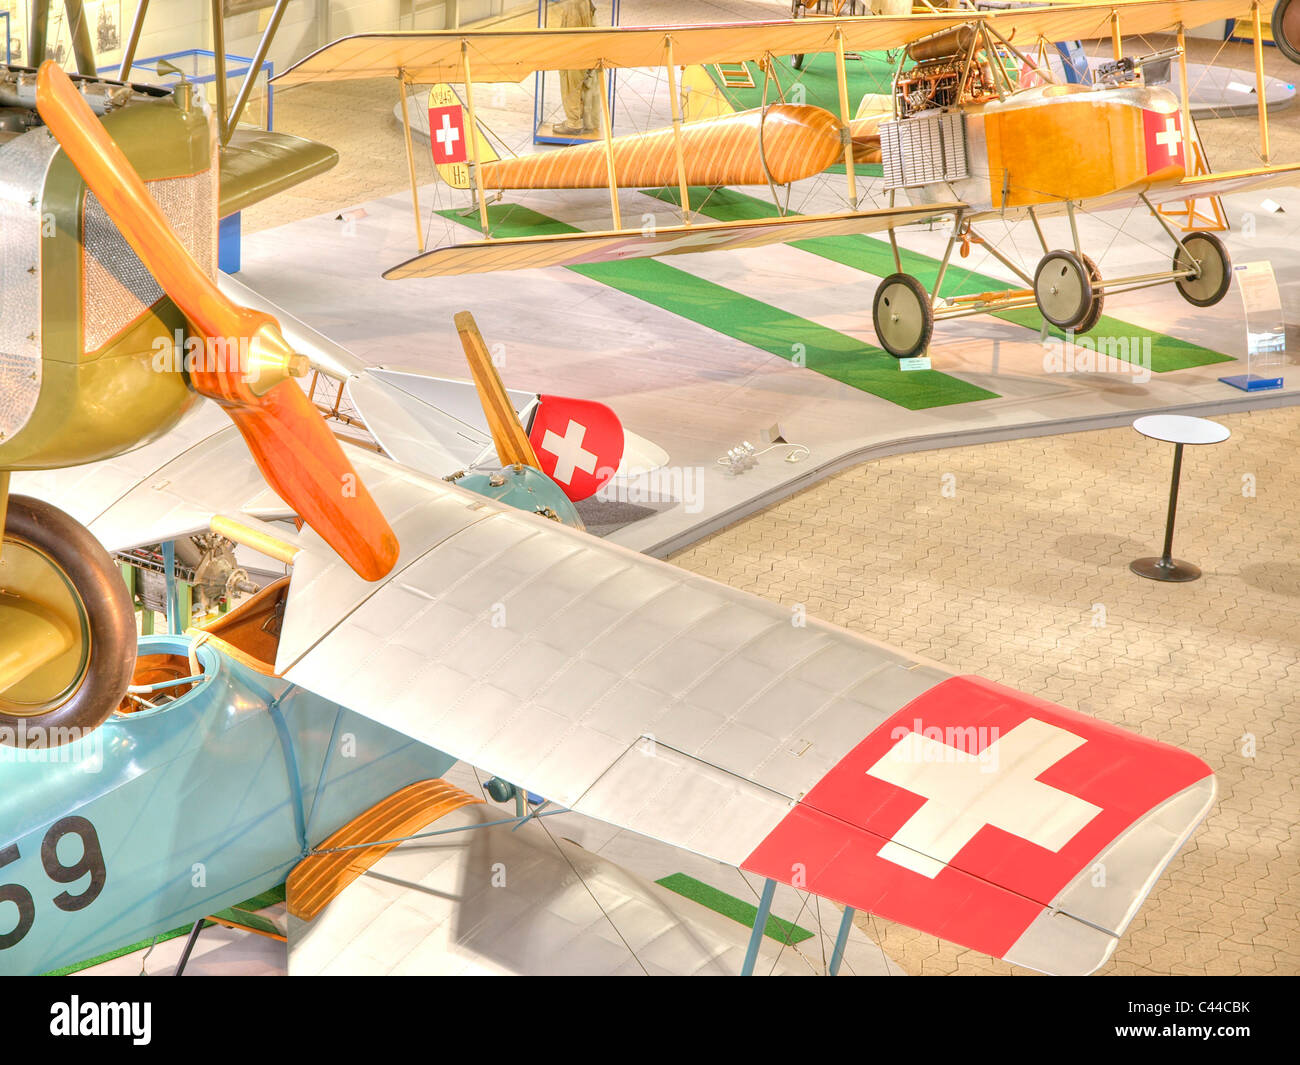 Les avions, l'aviateur's museum, musée, village9, le canton de Zurich, Suisse, les avions militaires, anciens, l'aviation Banque D'Images